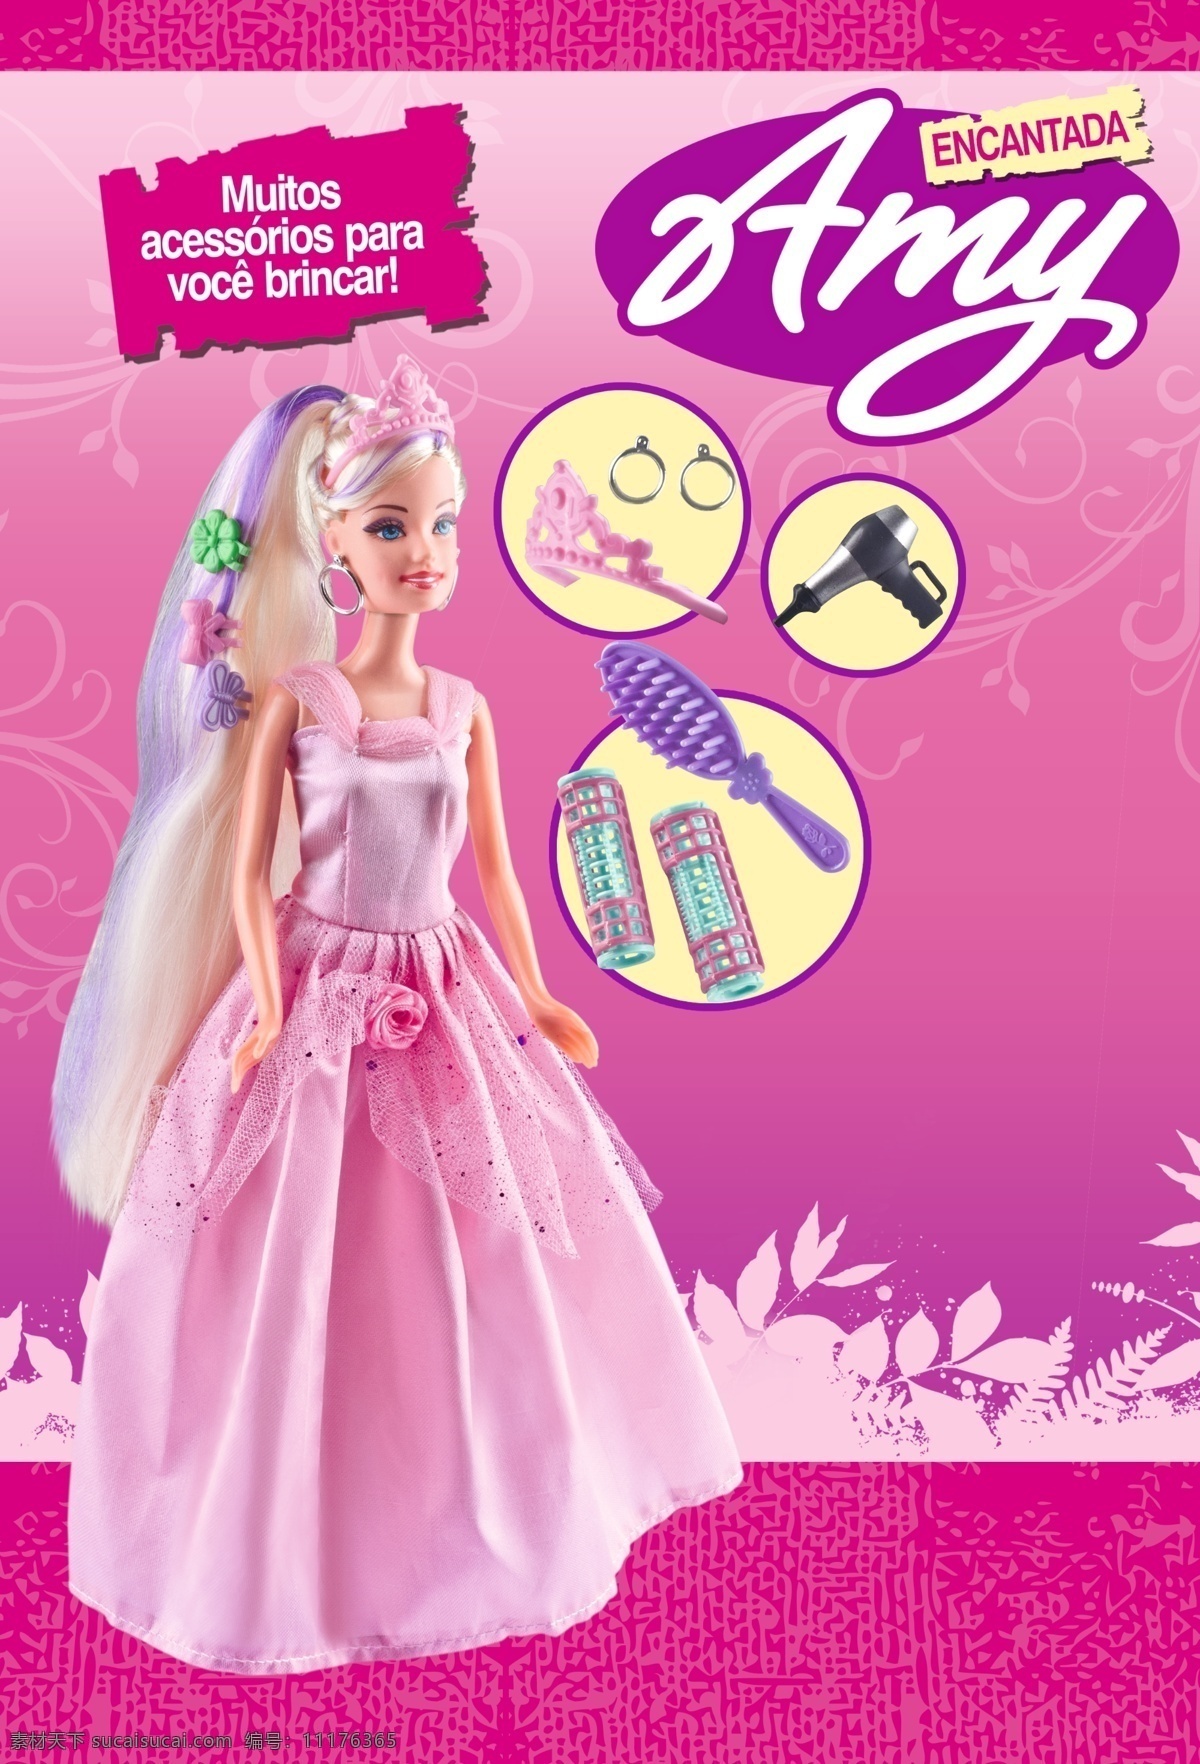 芭比娃娃 玩具 海报 长发公主 芭比 塑料娃娃 公主 广告设计模板 源文件